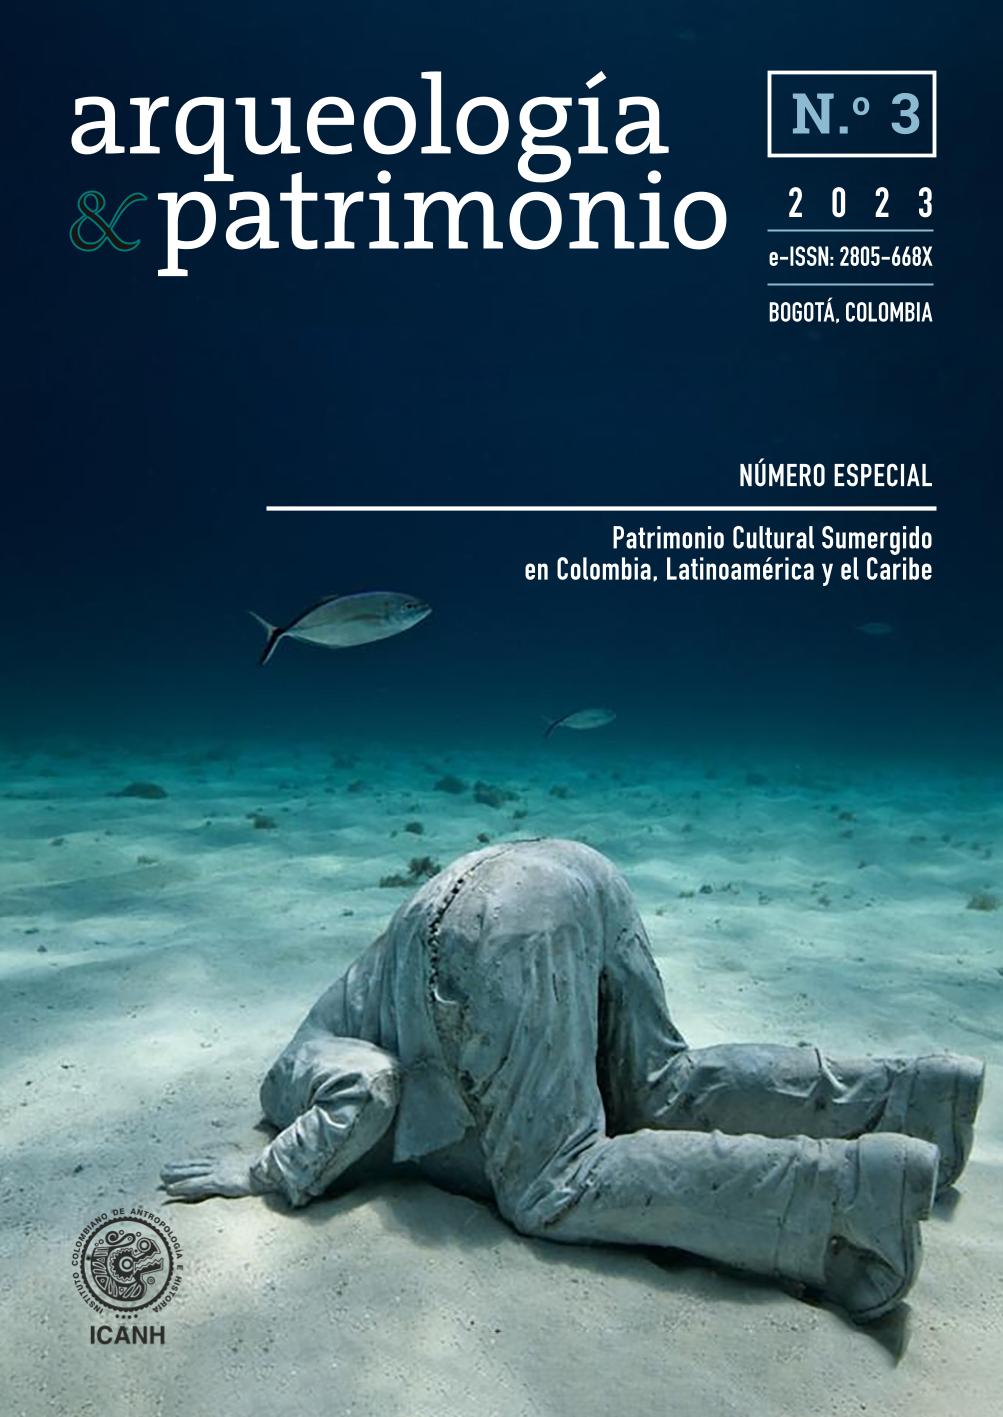 					View Vol. 3 No. 1 (2023): Revista Arqueología y Patrimonio - A&P - Submerged Cultural Heritage 
				